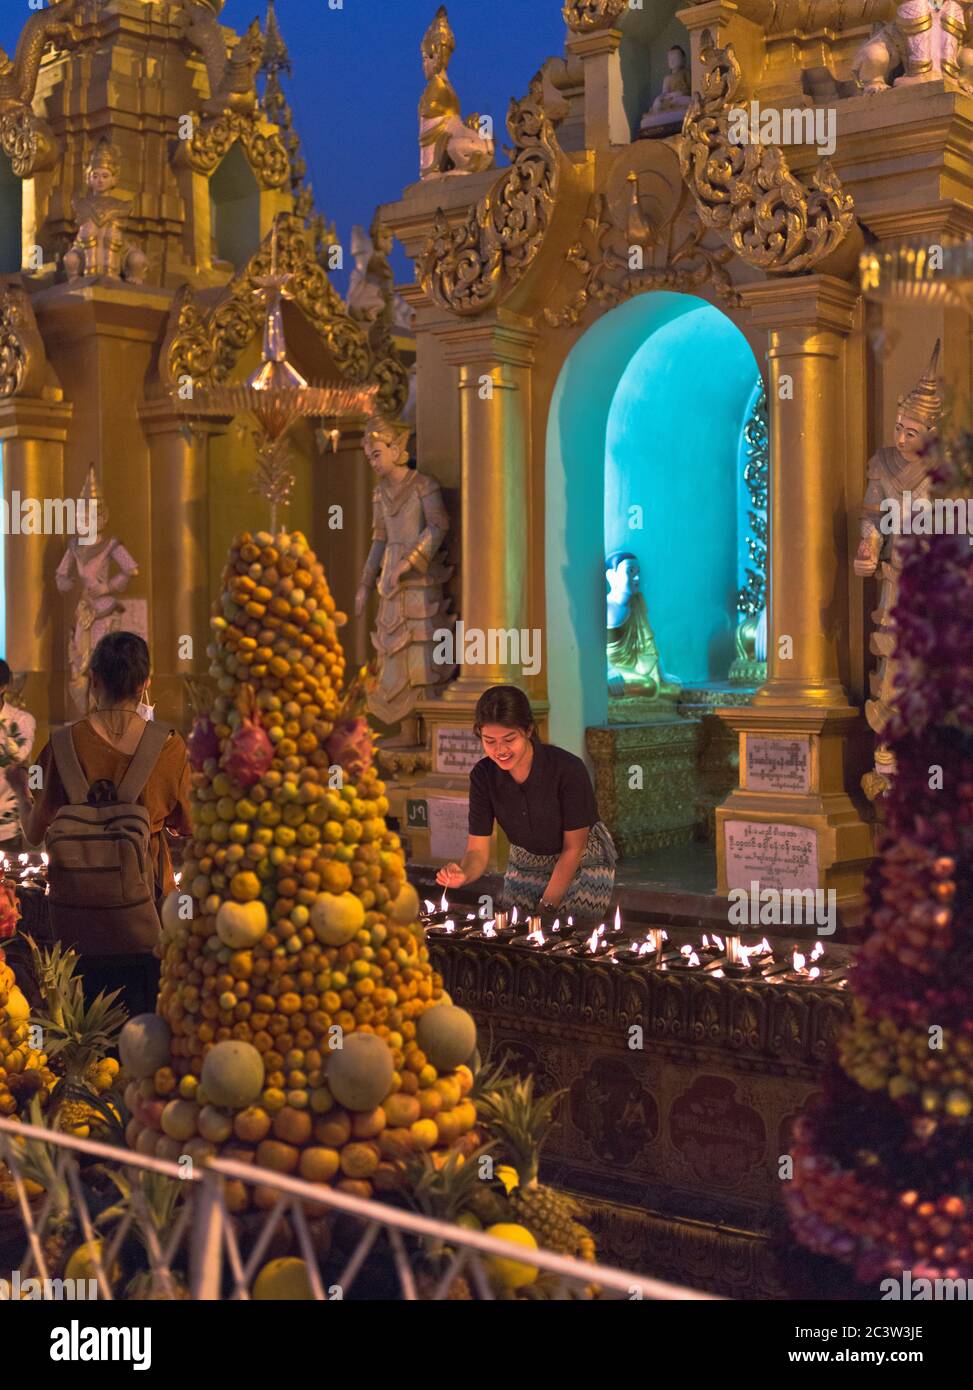 dh Shwedagon Pagoda tempio YANGON MYANMAR illuminazione candele templi buddisti la gente del posto cero rituali birmani luce tradizionale grande zedi dagon daw Foto Stock